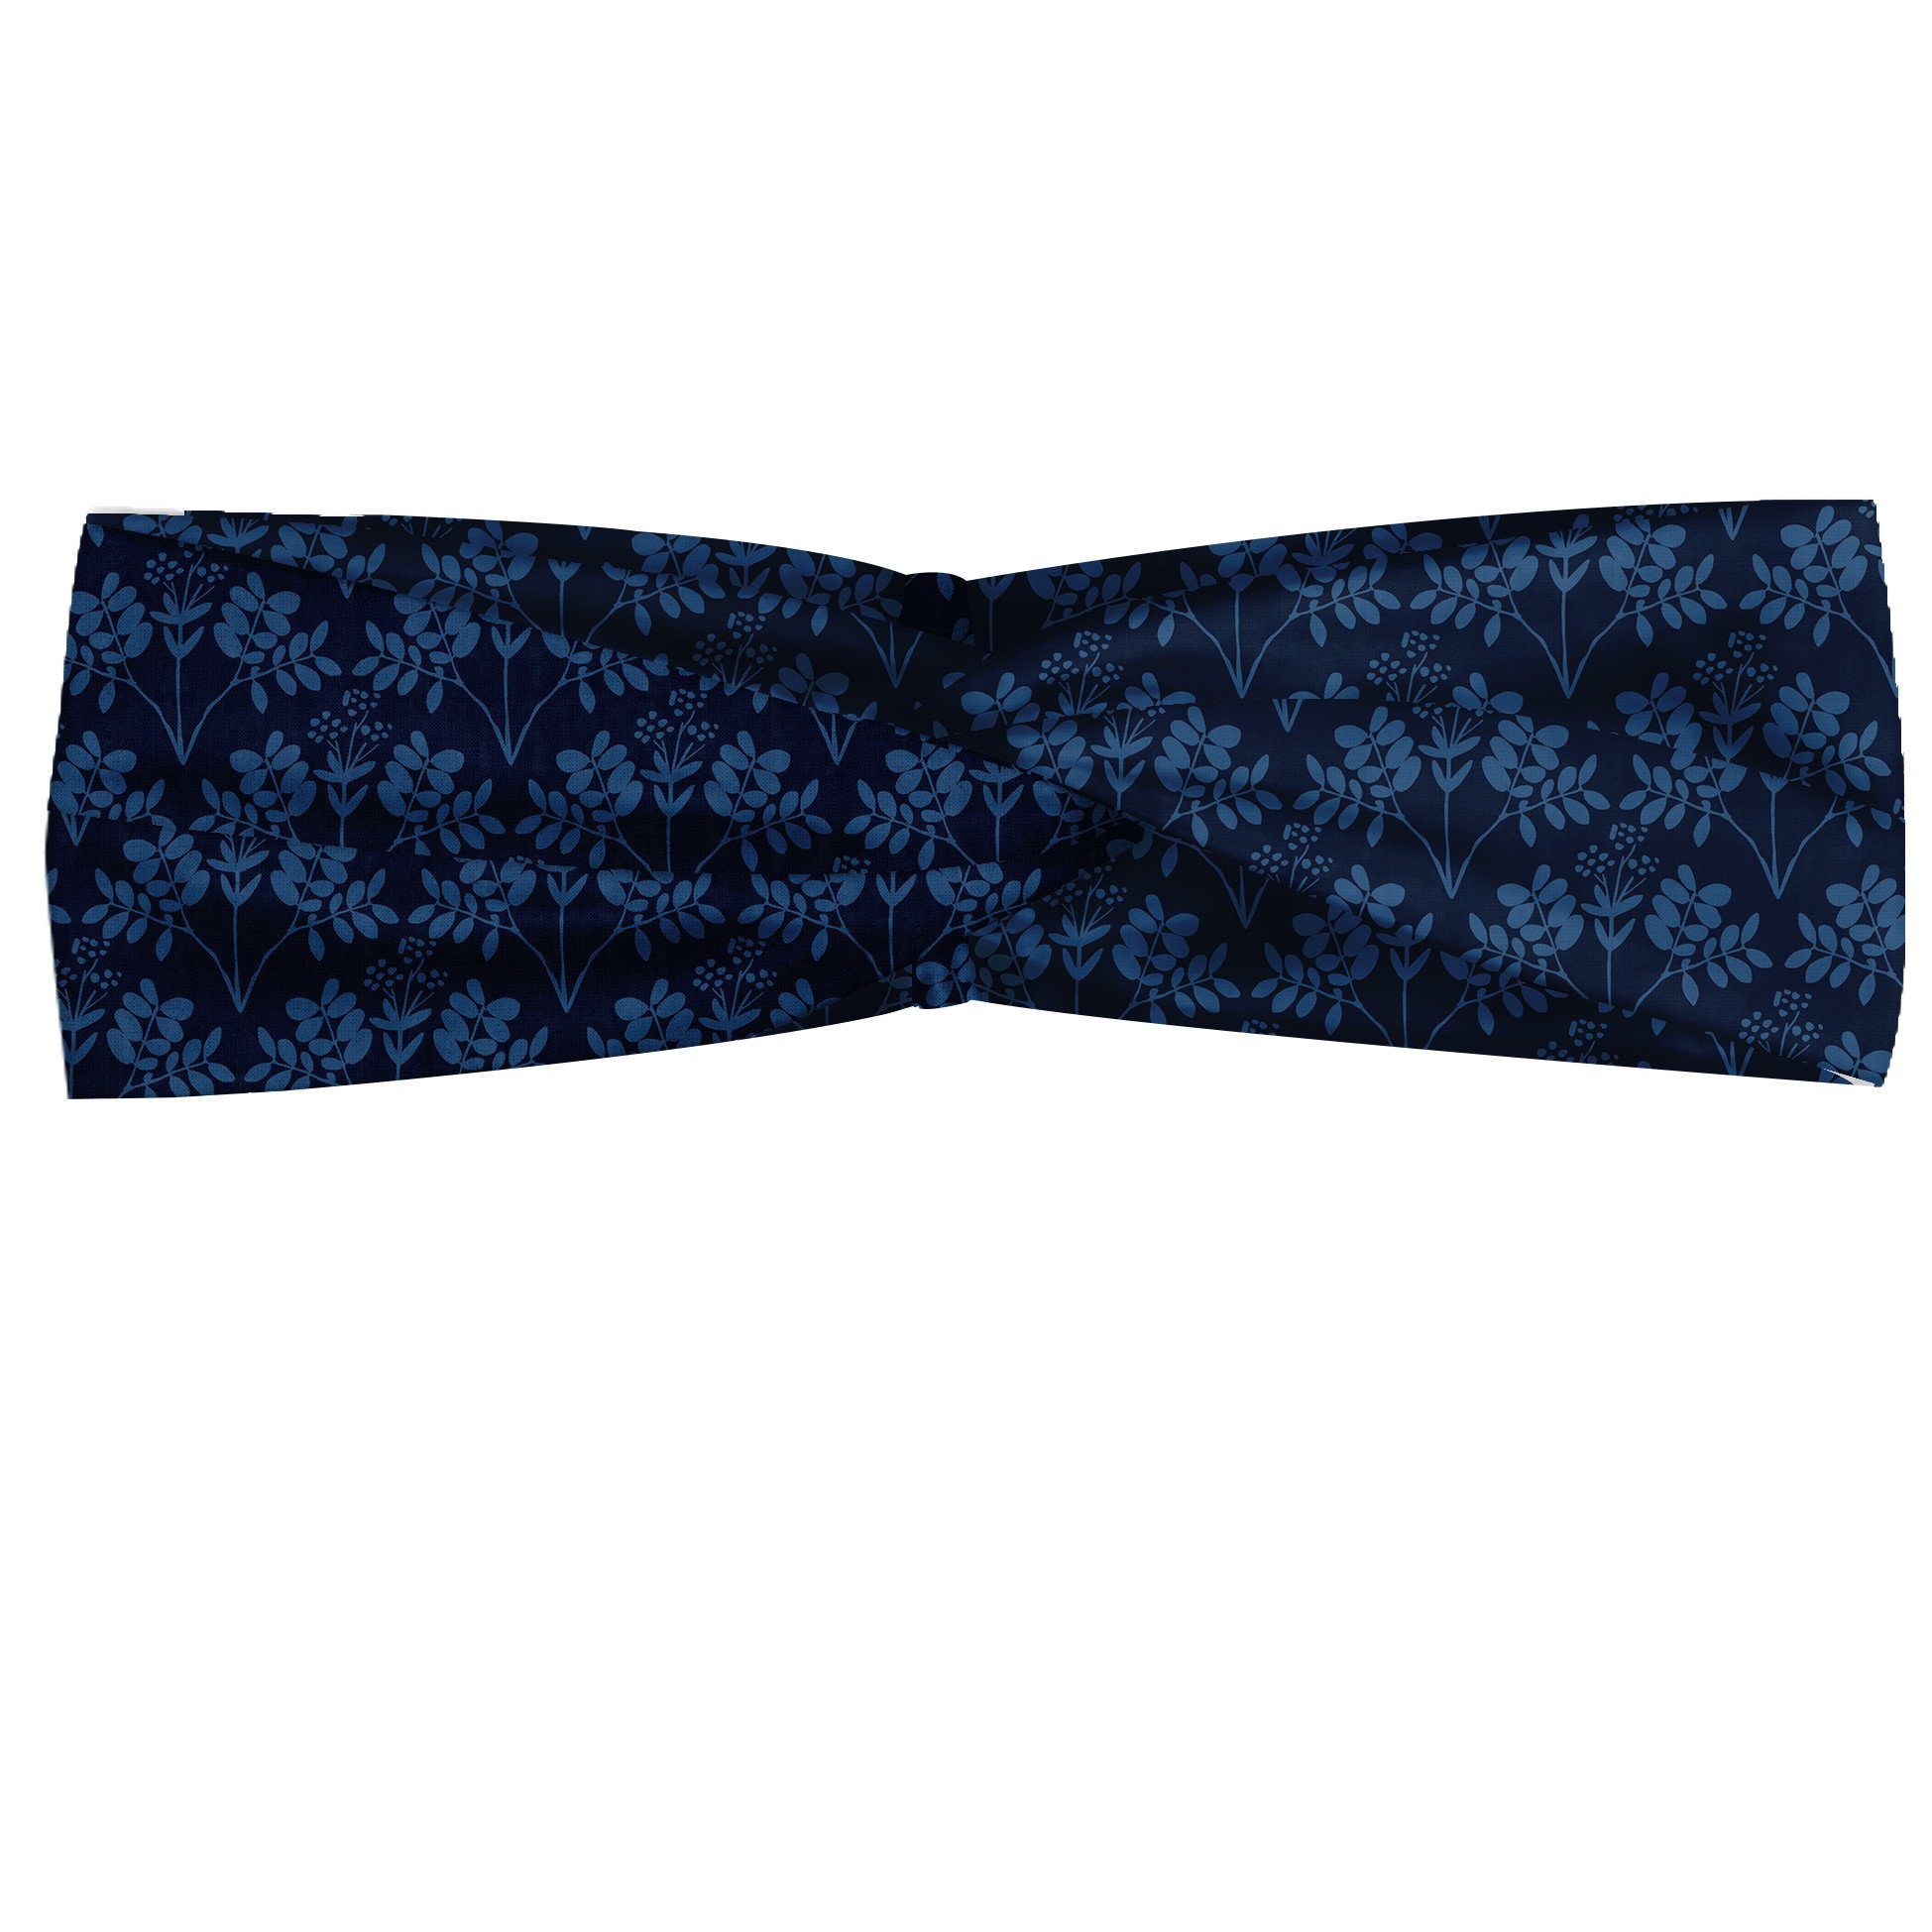 Abakuhaus Stirnband Elastisch und Angenehme alltags accessories Blau Ozean inspirierte Blumen